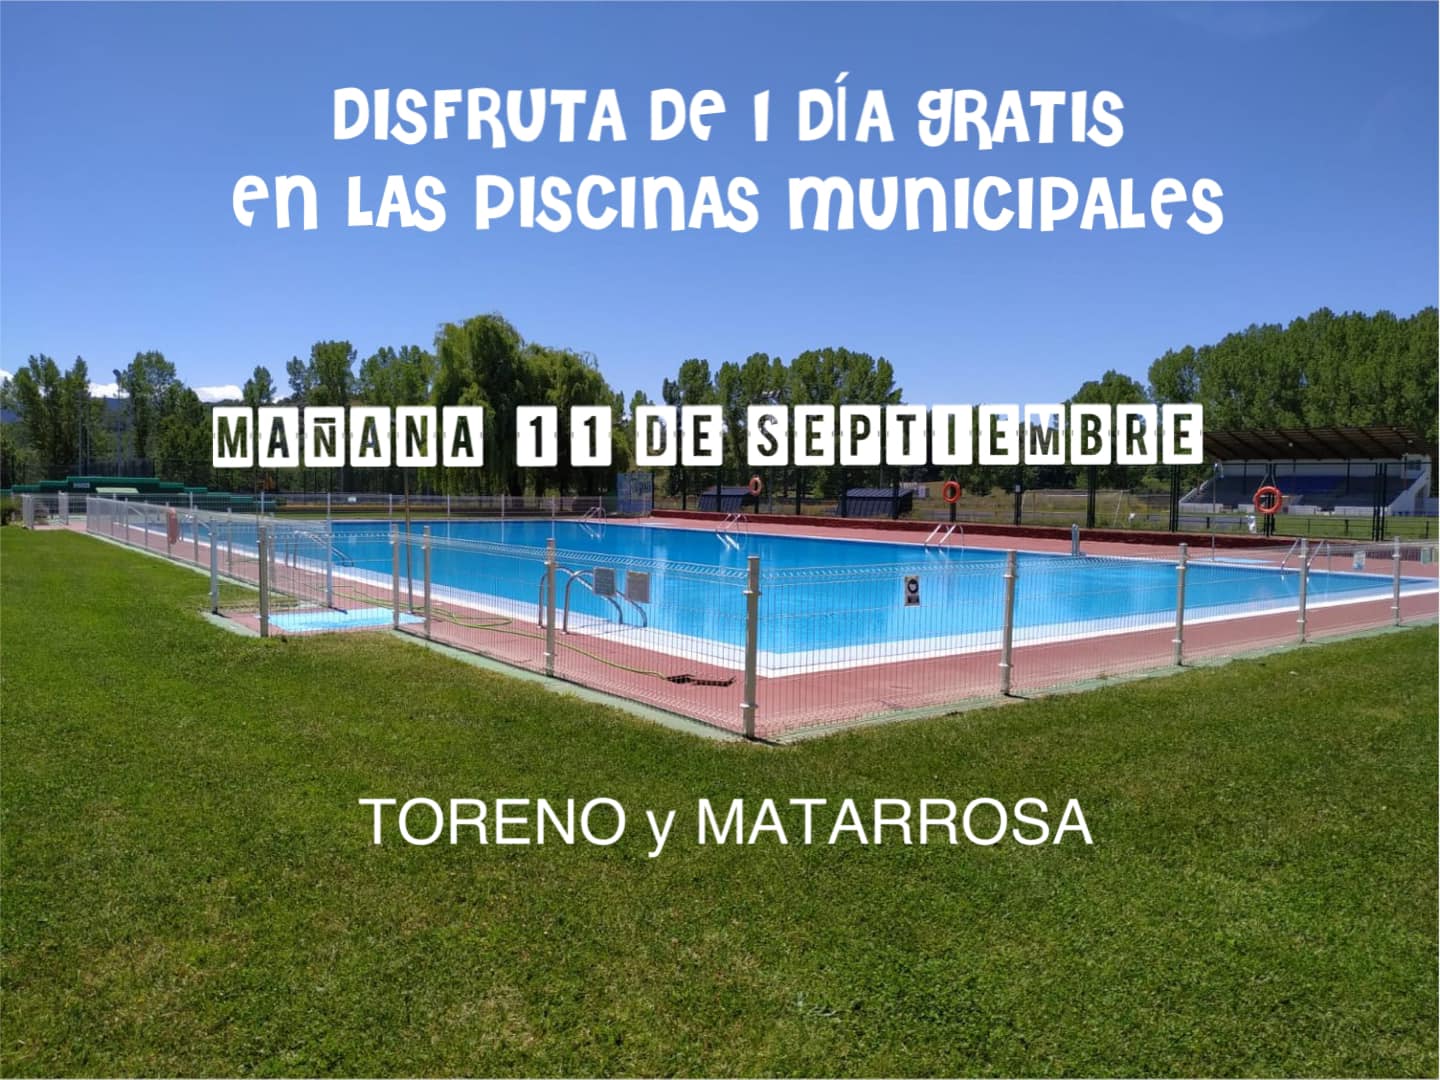 Toreno te invita hoy domingo a disfrutar de sus dos piscinas municipales: Toreno y Matarrosa 2